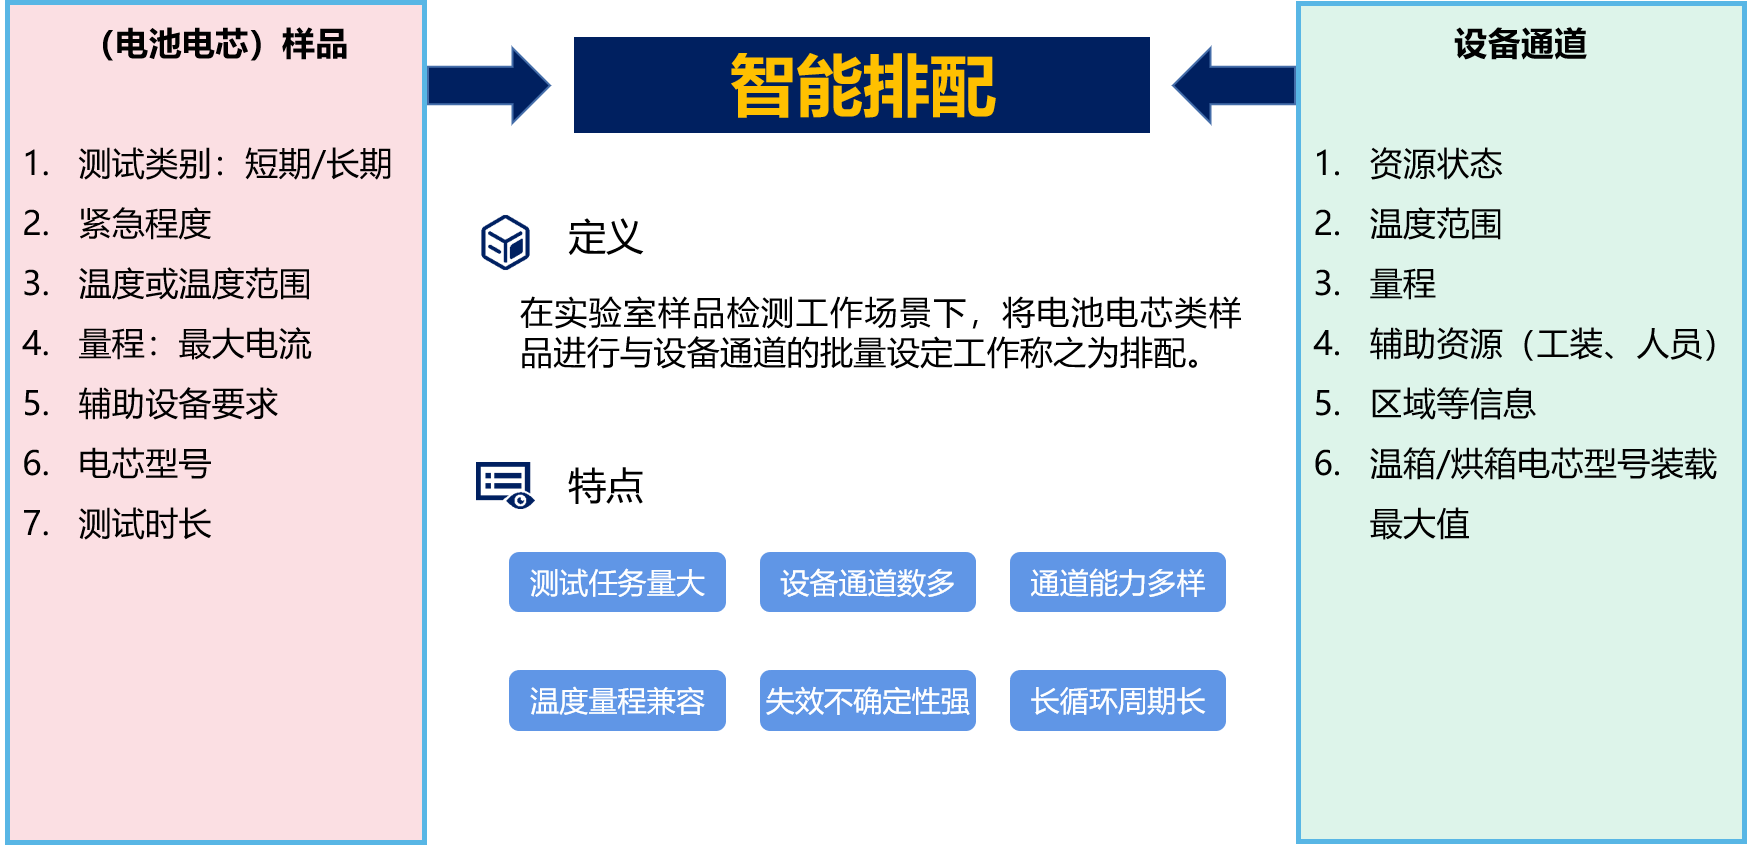 Figure 1 Arrangement definition